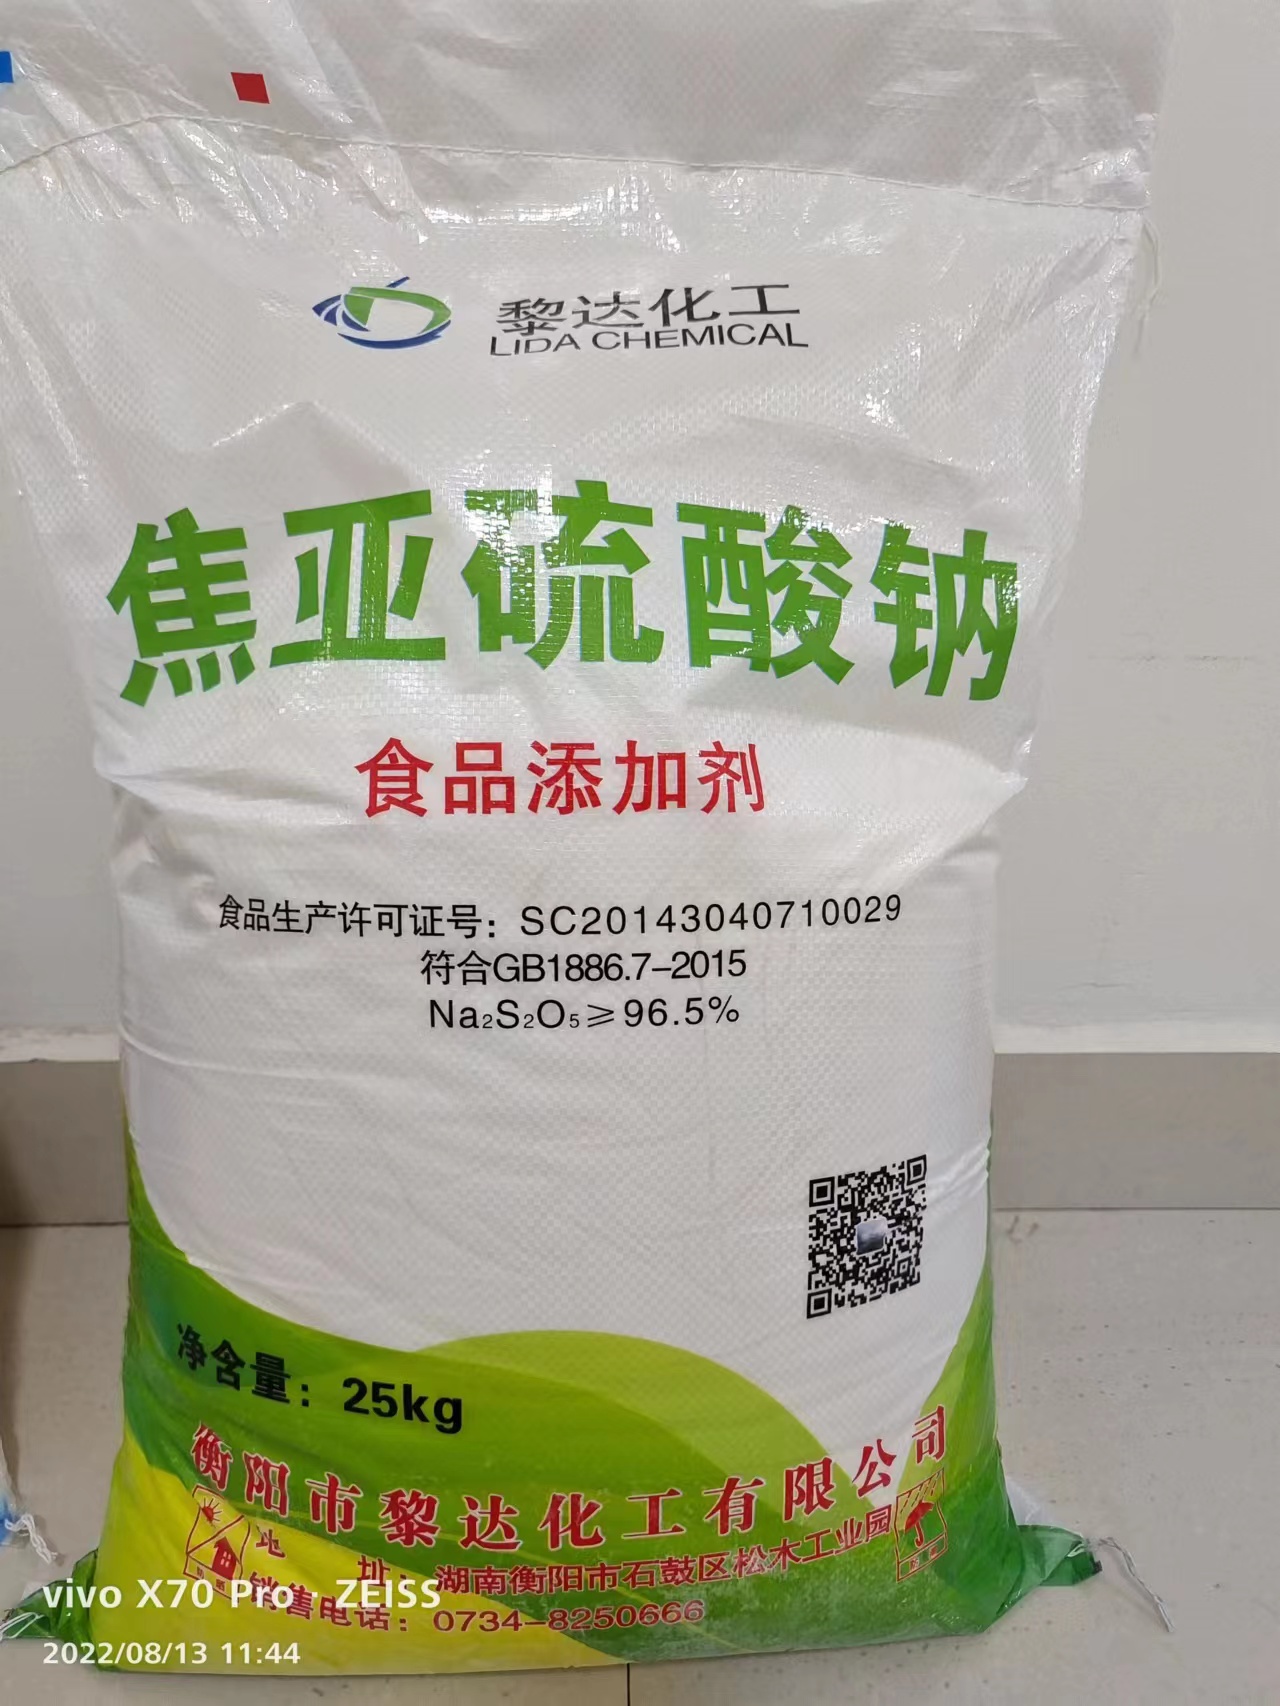 焦亚硫酸钠 含量97% 国产_焦亚硫酸钠价格_无机化学品原料采购_上海凯茵化工